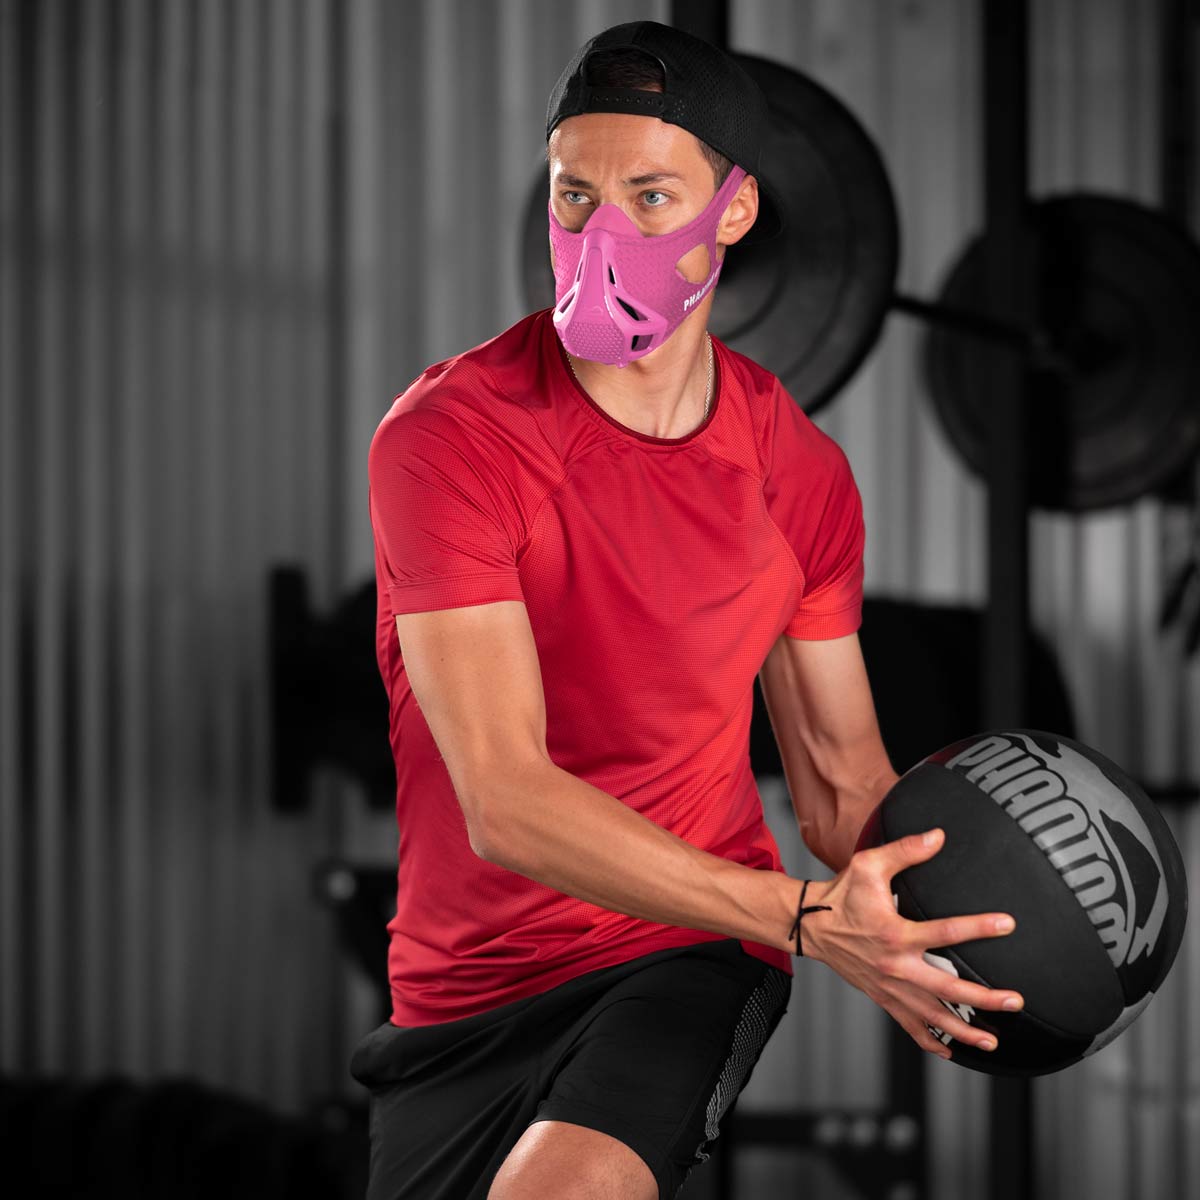 Die Phantom Trainingsmaske hilft dir dabei dein Training auf das nächste Level zu heben. Egal ob im Kraftsport oder auch beim Kampfsport. Jetzt auch in der Farbe Pink.